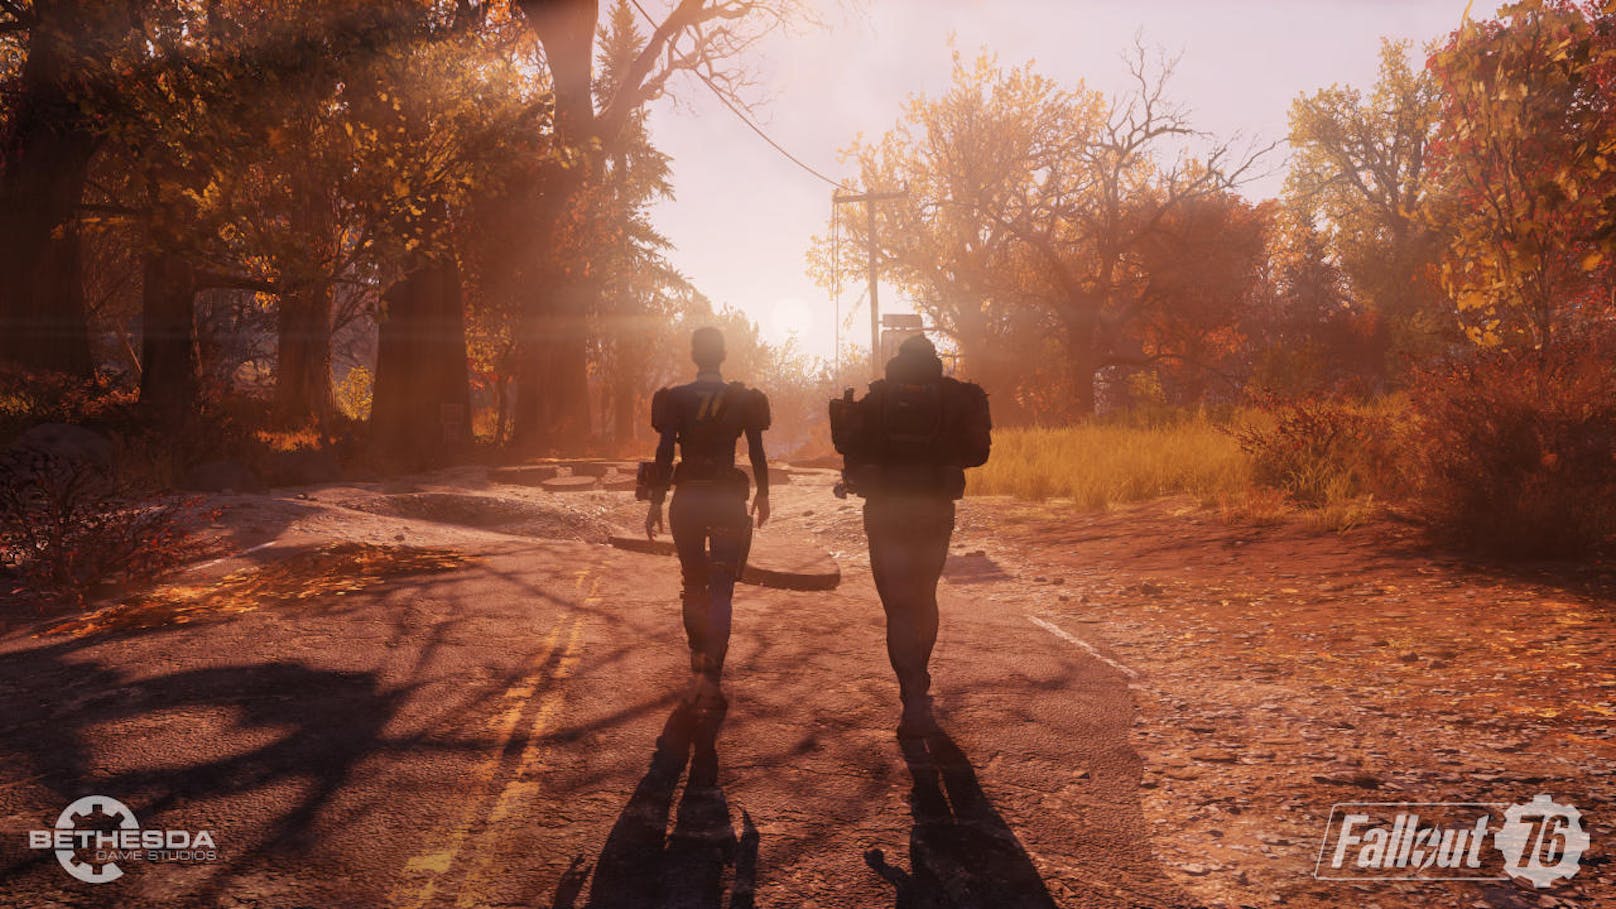 Nach heftiger Kritik am Titel erhält Fallout 76 in den nächsten Wochen eine Reihe von Updates. "Wir arbeiten kontinuierlich an der langen Liste an Updates für das Spiel, wie zum Beispiel neuen Herausforderungen und Events, neuen Vaults, einem fraktionsbasierten PvP-System und vielem mehr. Mit eurer Unterstützung werden wir Fallout 76 zu einem nachhaltigen Spielerlebnis machen", heißt es von Bethesda.